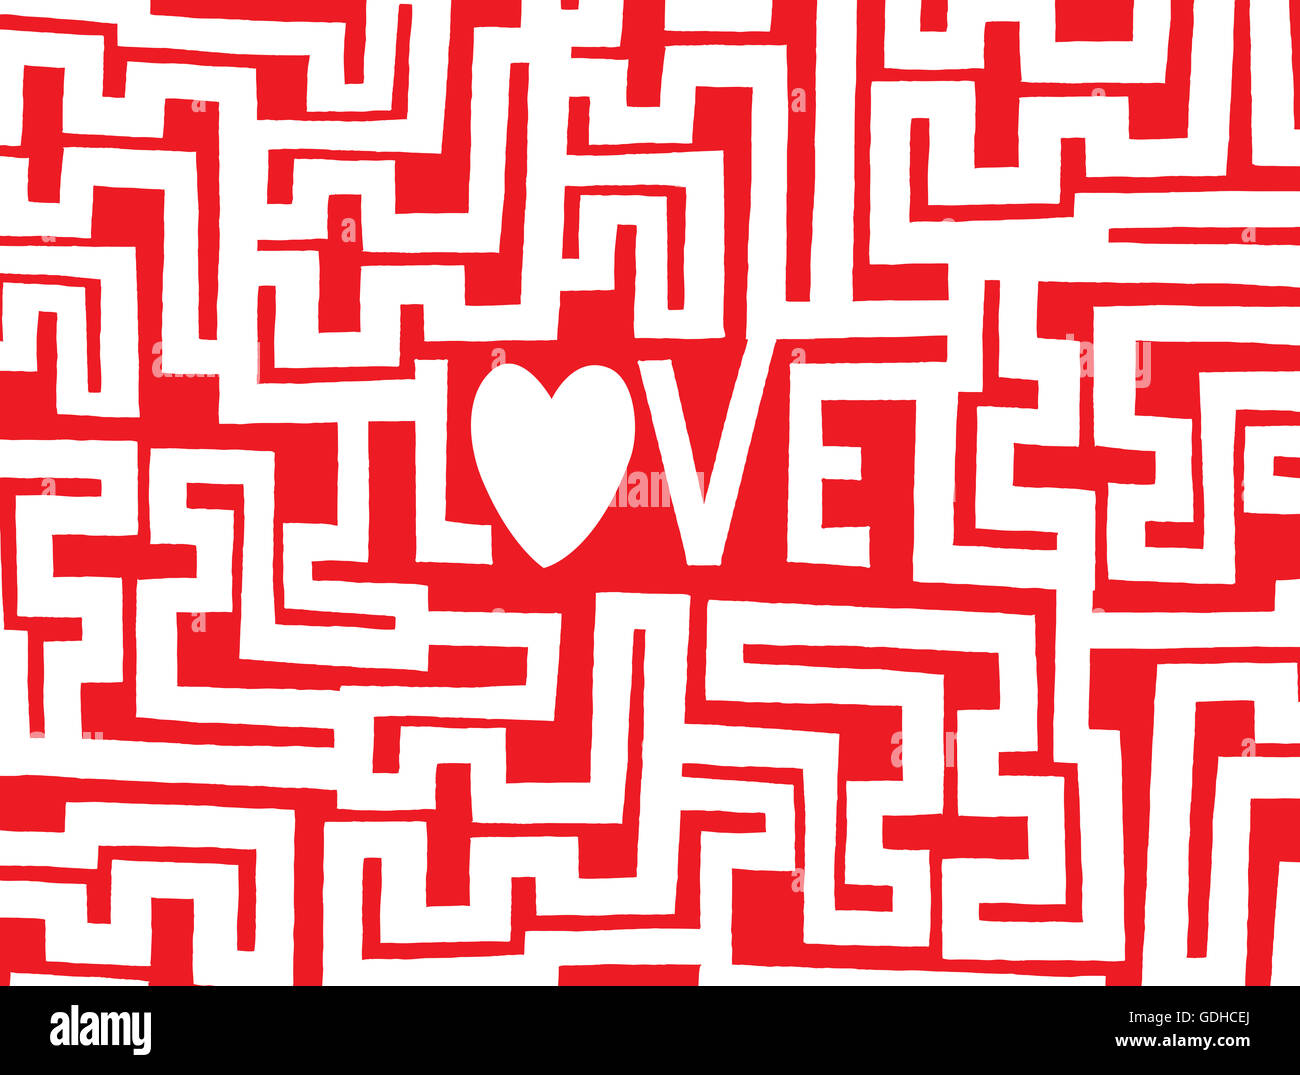 Cartoon illustrazione di un complesso labirinto per trovare il modo in amore Foto Stock